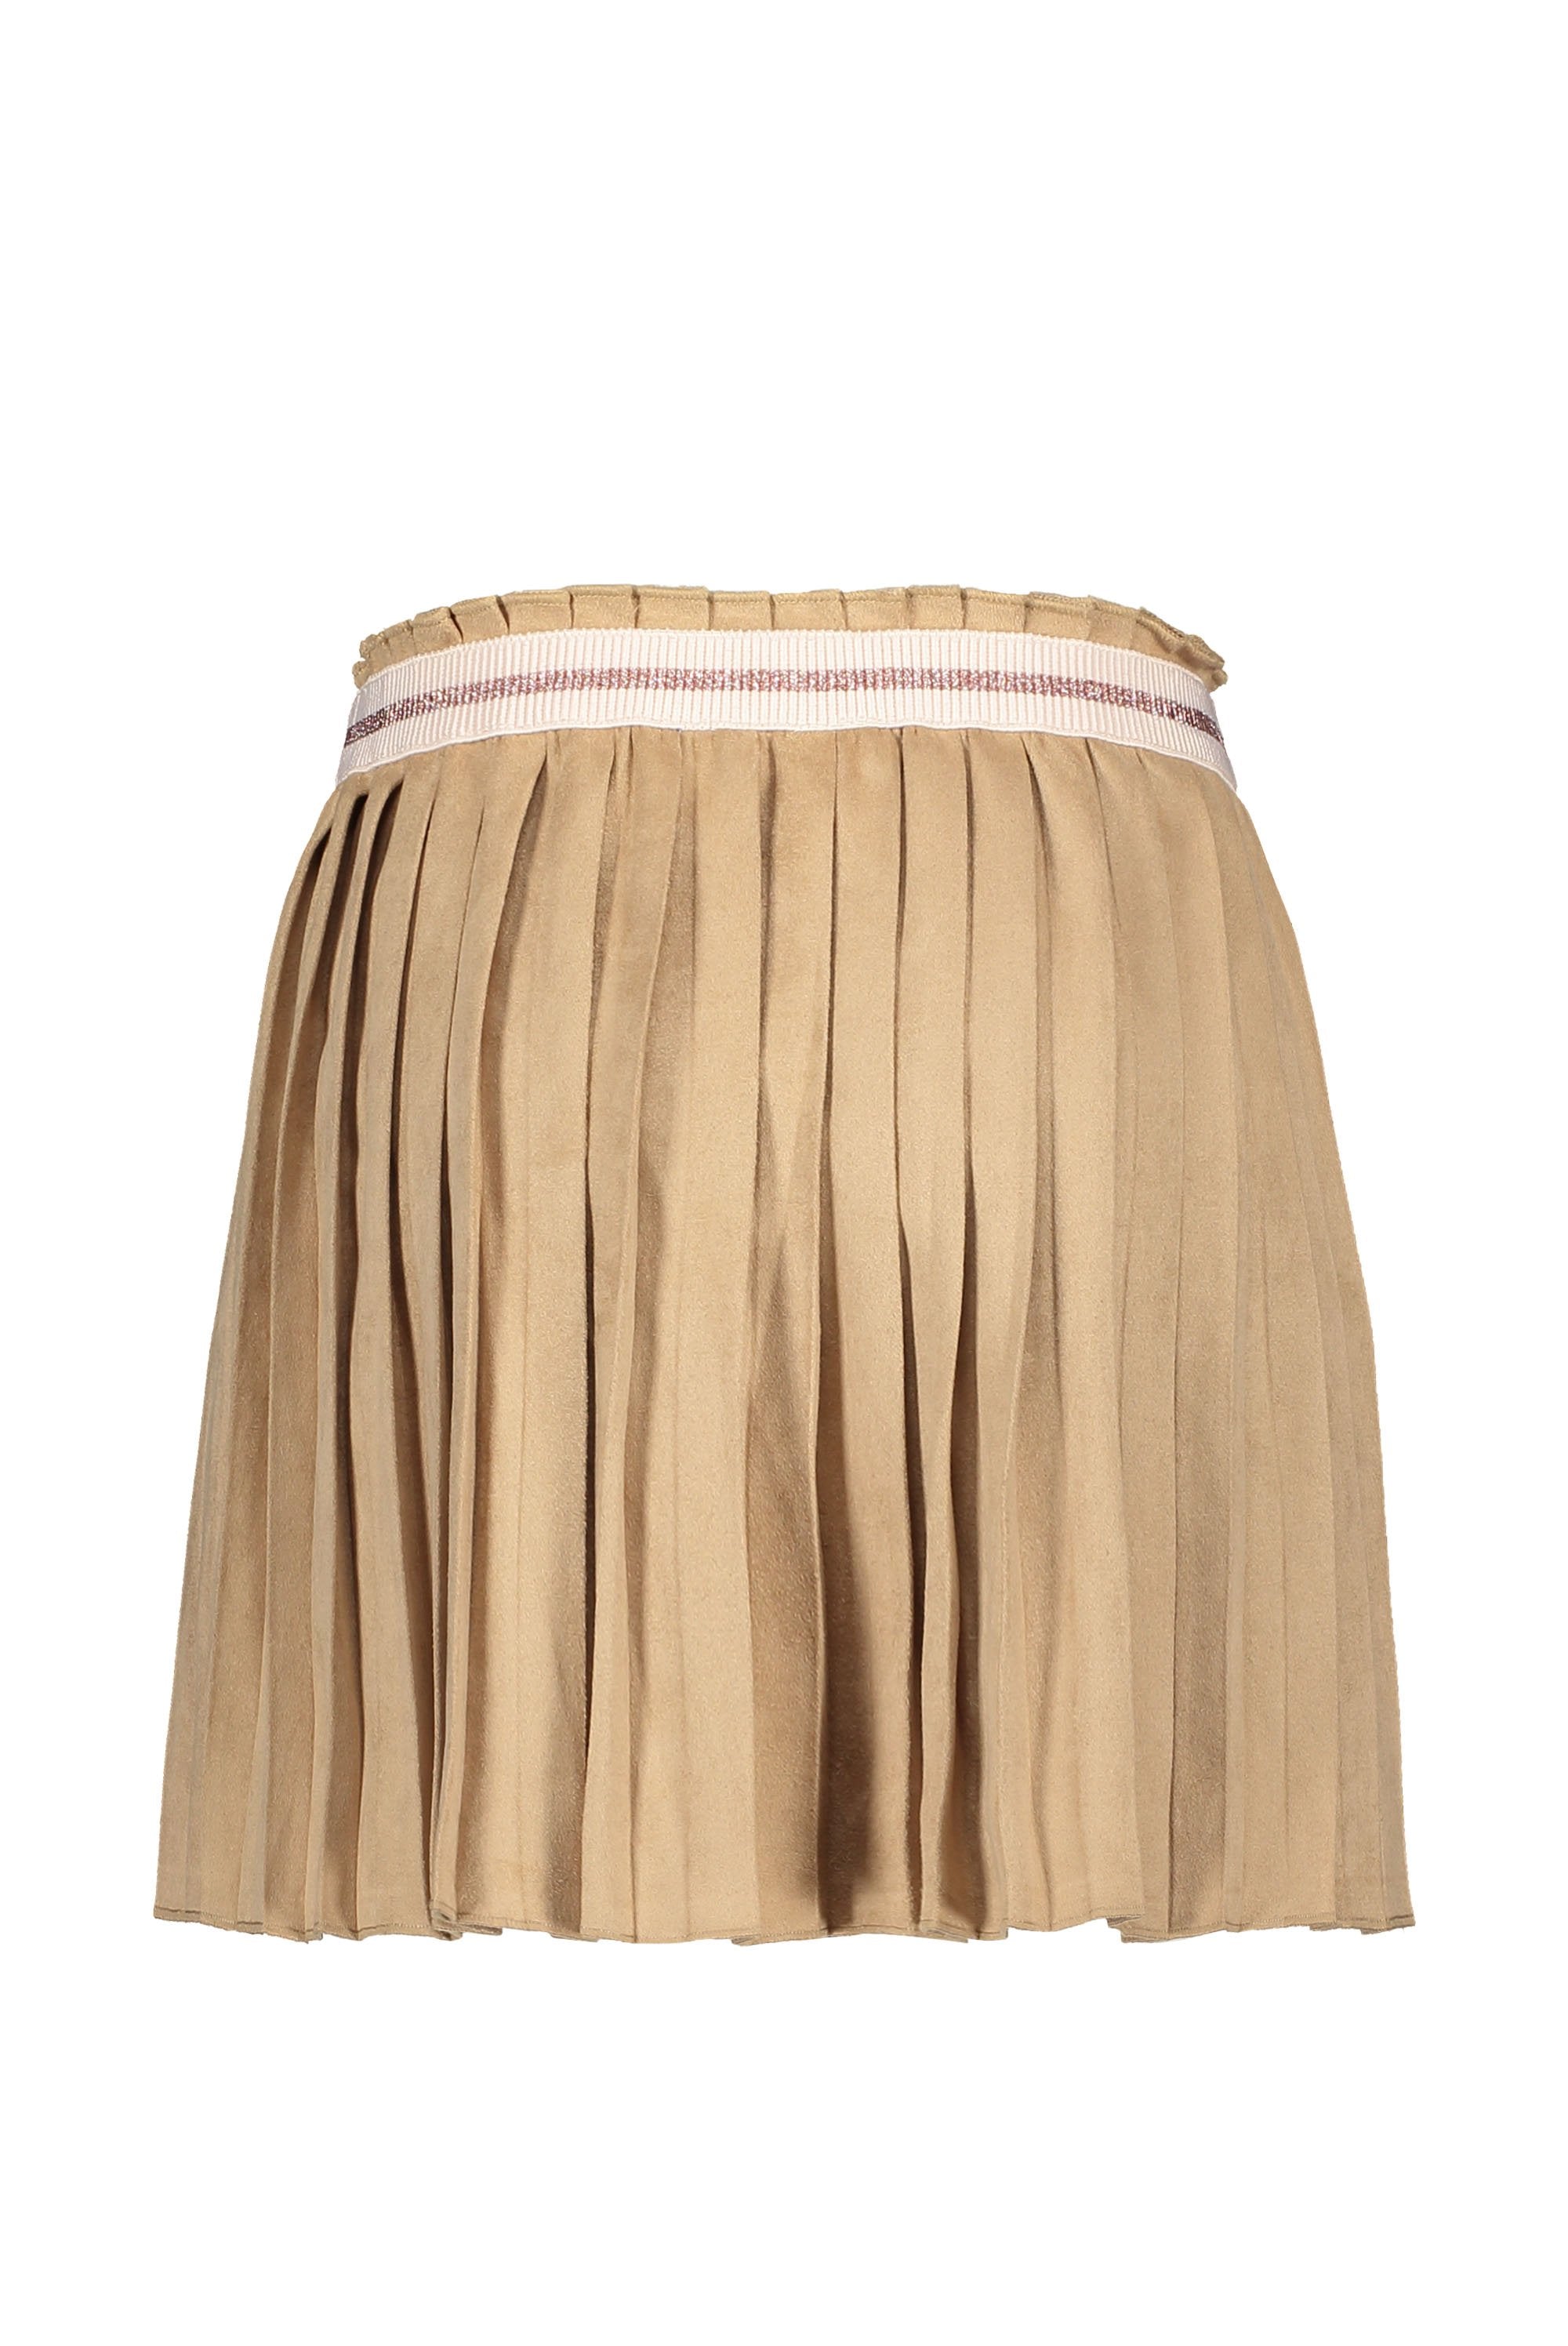 Meisjes Flo girls suede plisse skirt van Like Flo in de kleur Mud in maat 152.